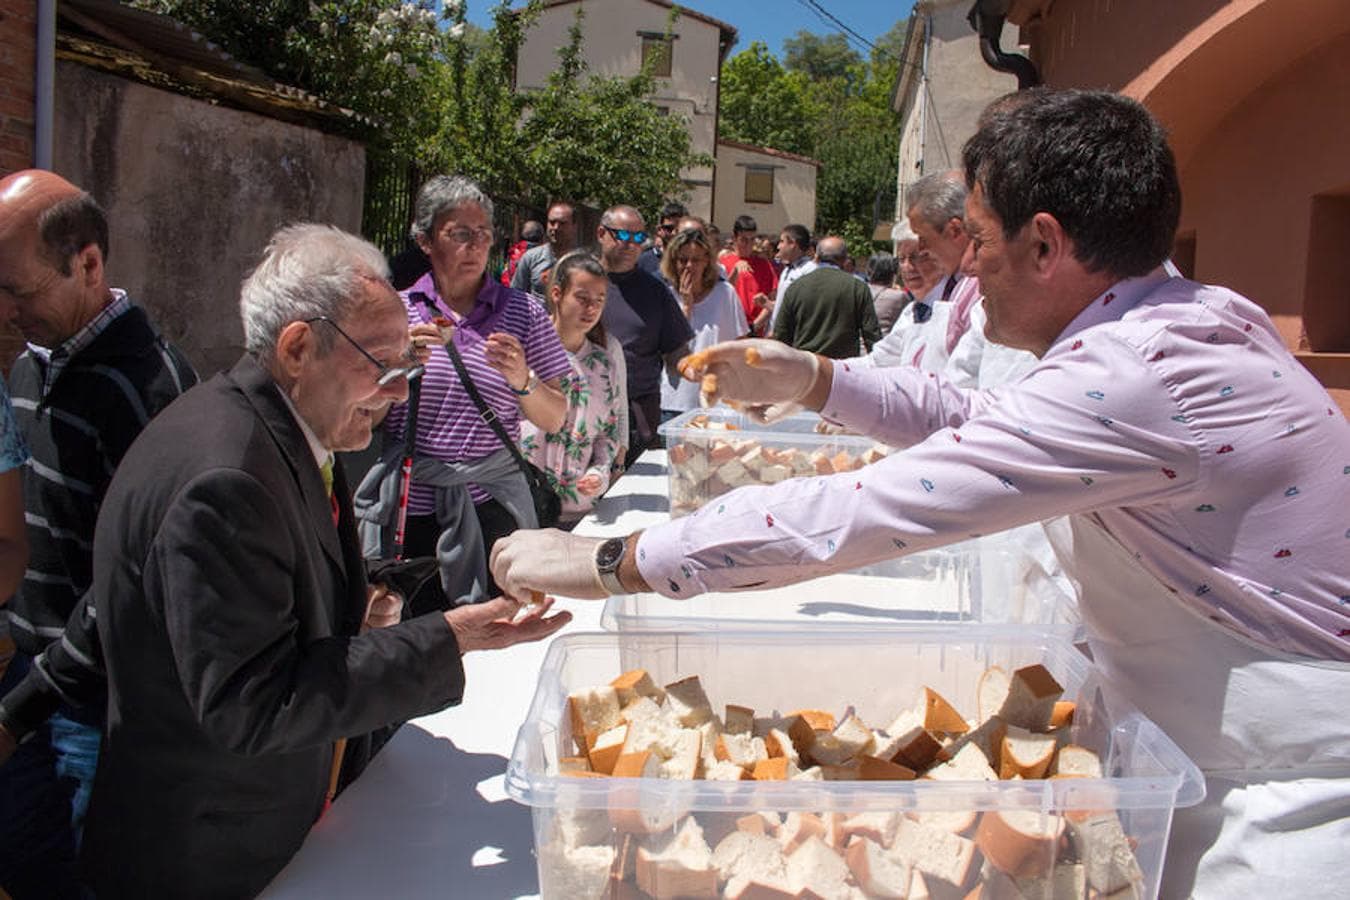 Gallinero de Rioja apunta a verano con su romería, la primera que se realiza tras las fiestas patronales de Santo Domingo. Después seguirán otras dos, ambas con destino a la ermita de Las Abejas.